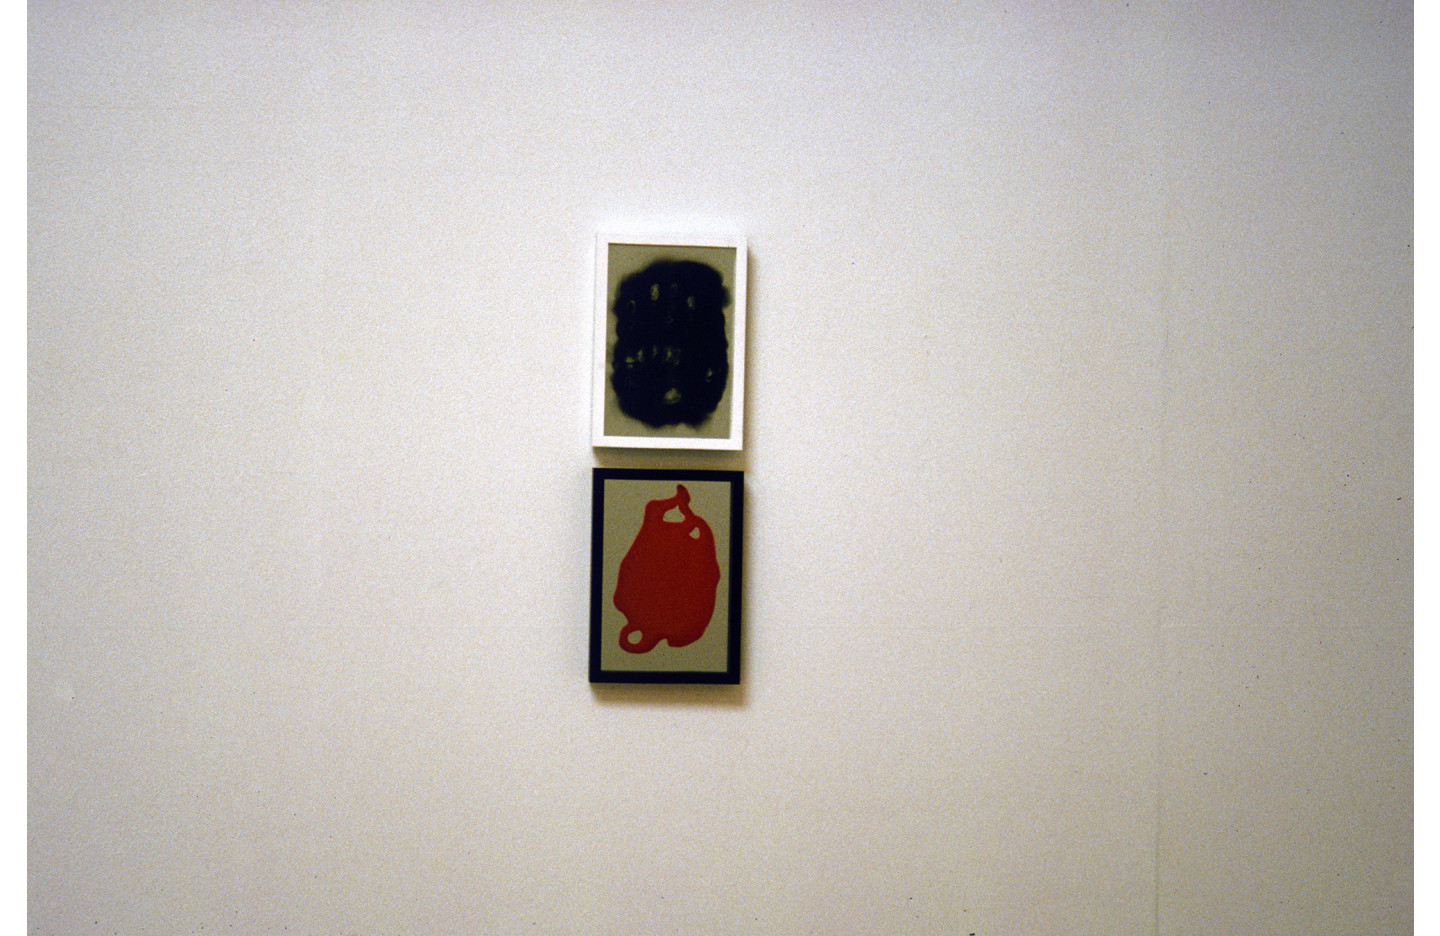 European Painting, Ramp Gallery (2001)